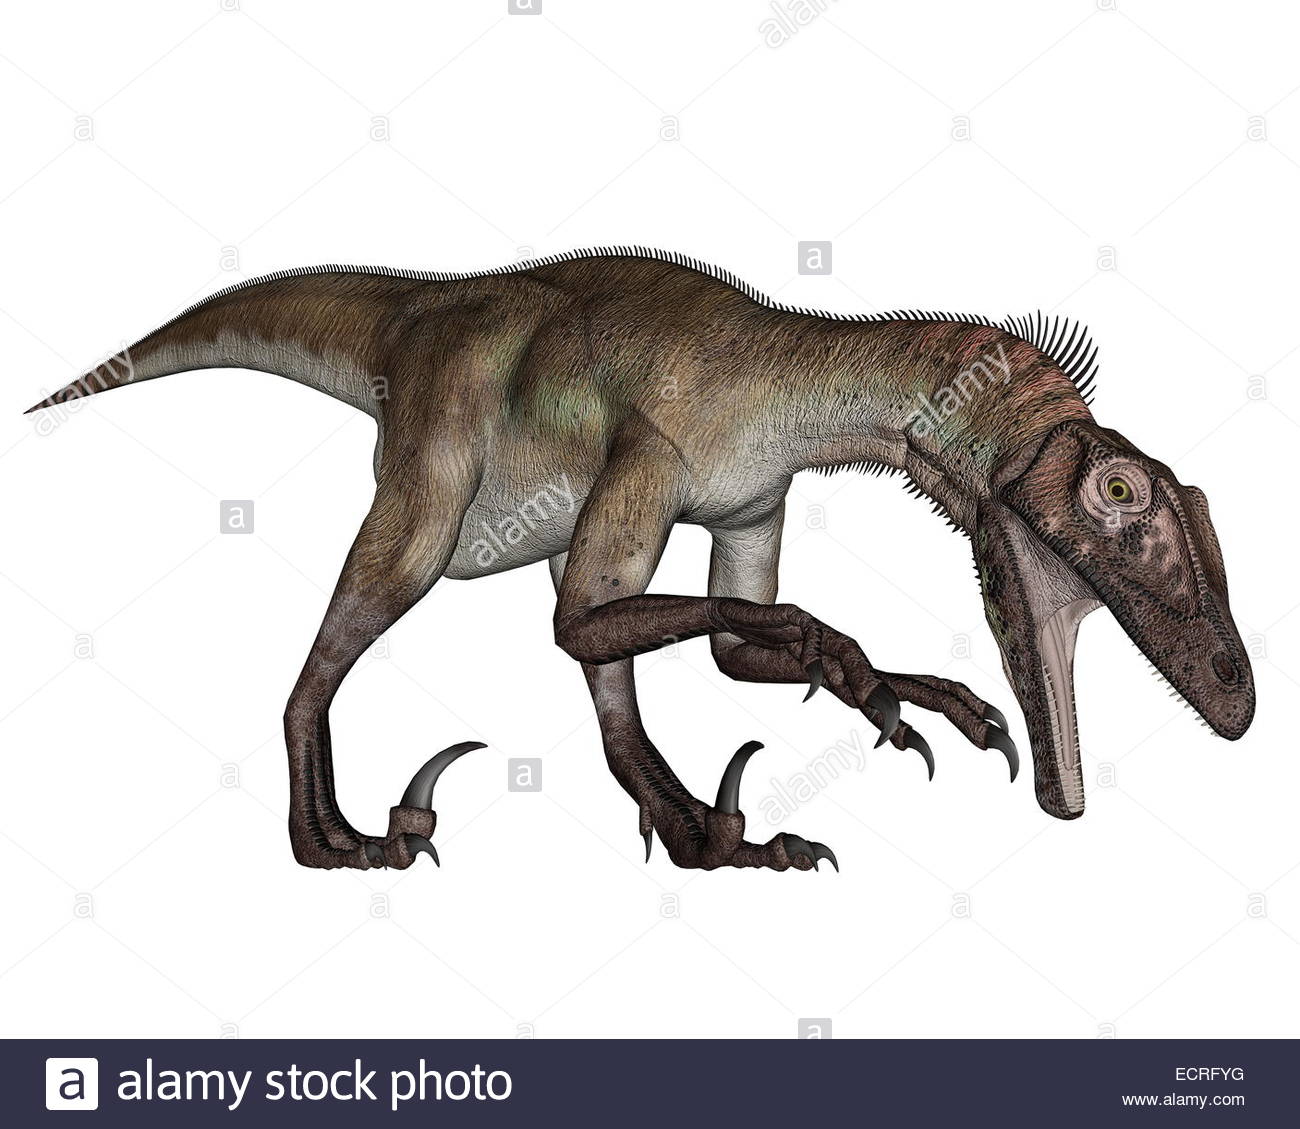 Utahraptor Dinosaur Roaring Down In White Background 3d Render